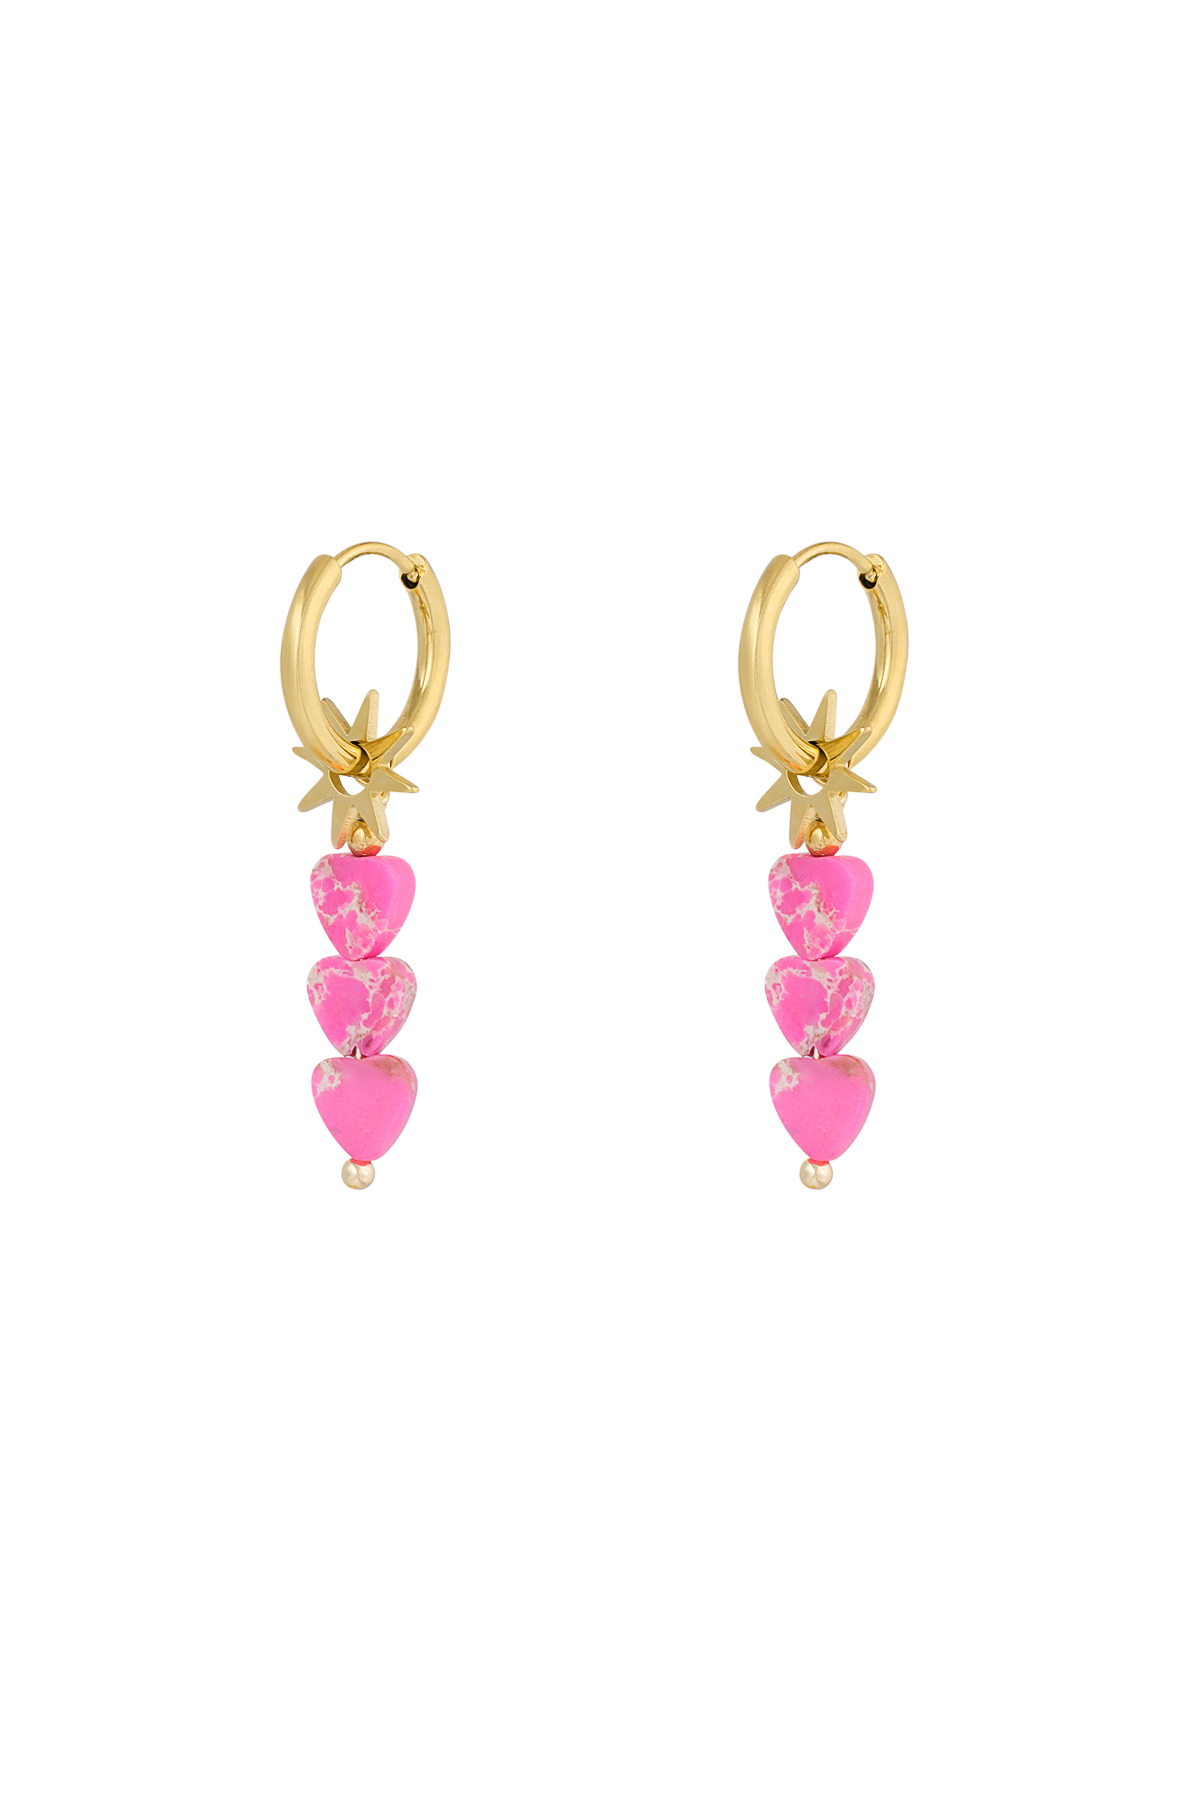 Earrings triple heart star - pink gold h5 